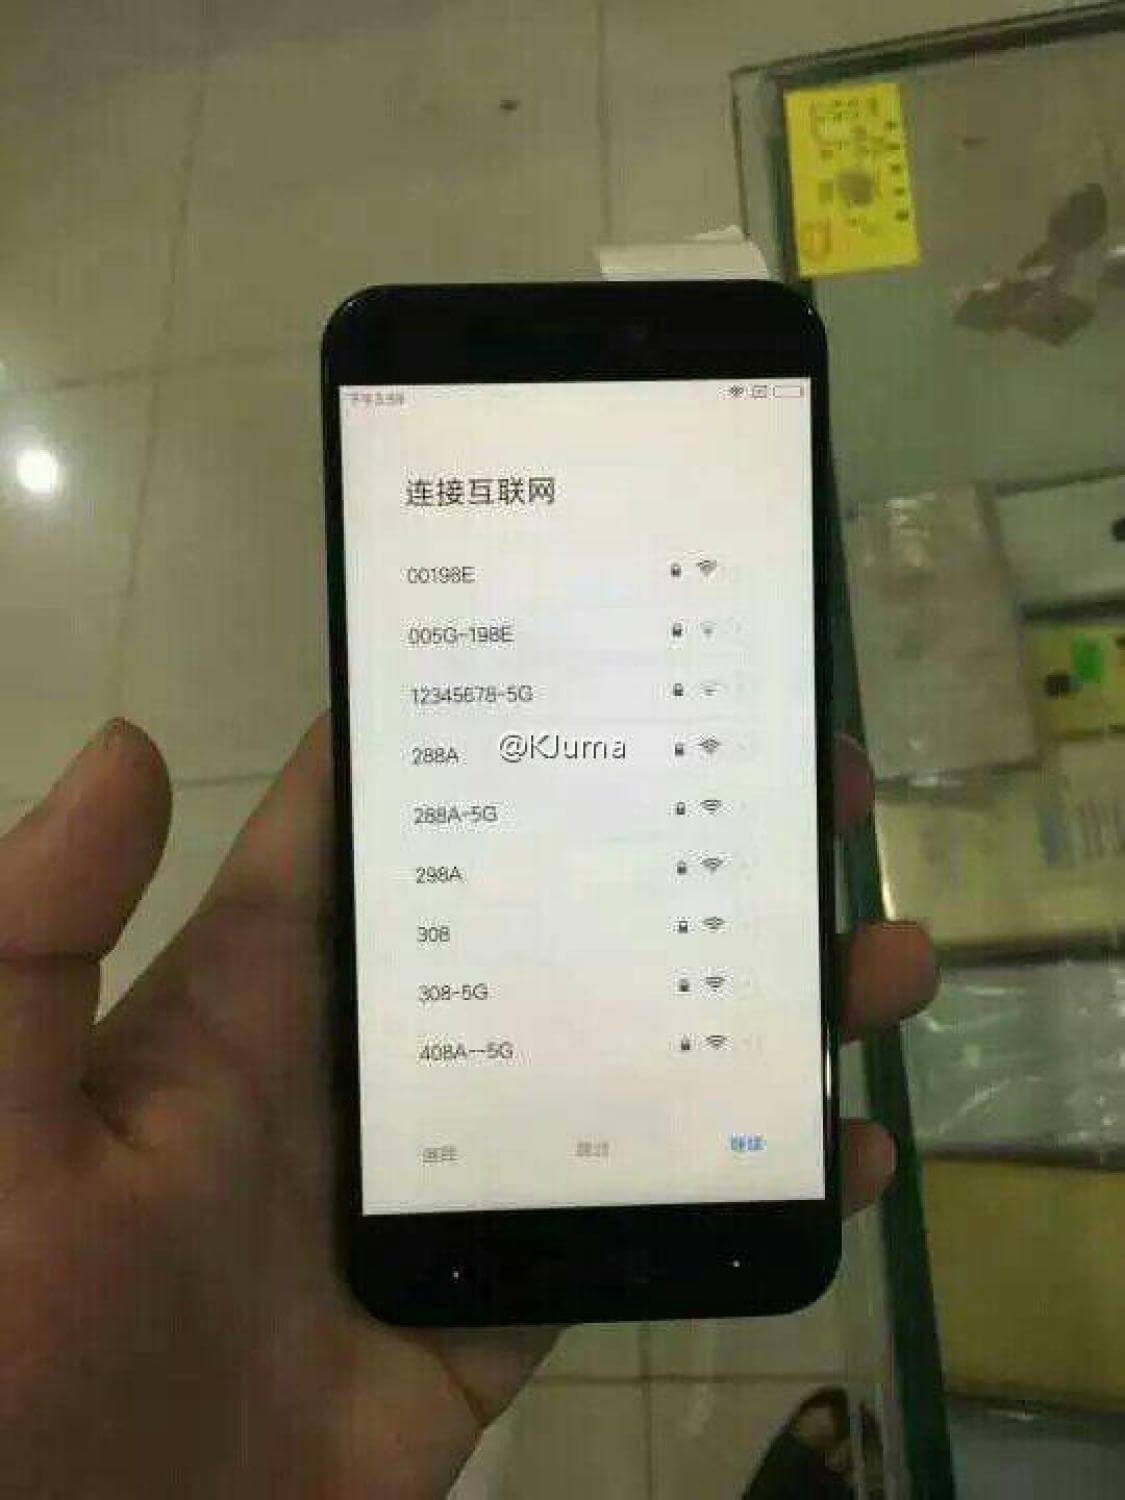 10 новых фото якобы Xiaomi 5C появились в Сети. Фото.